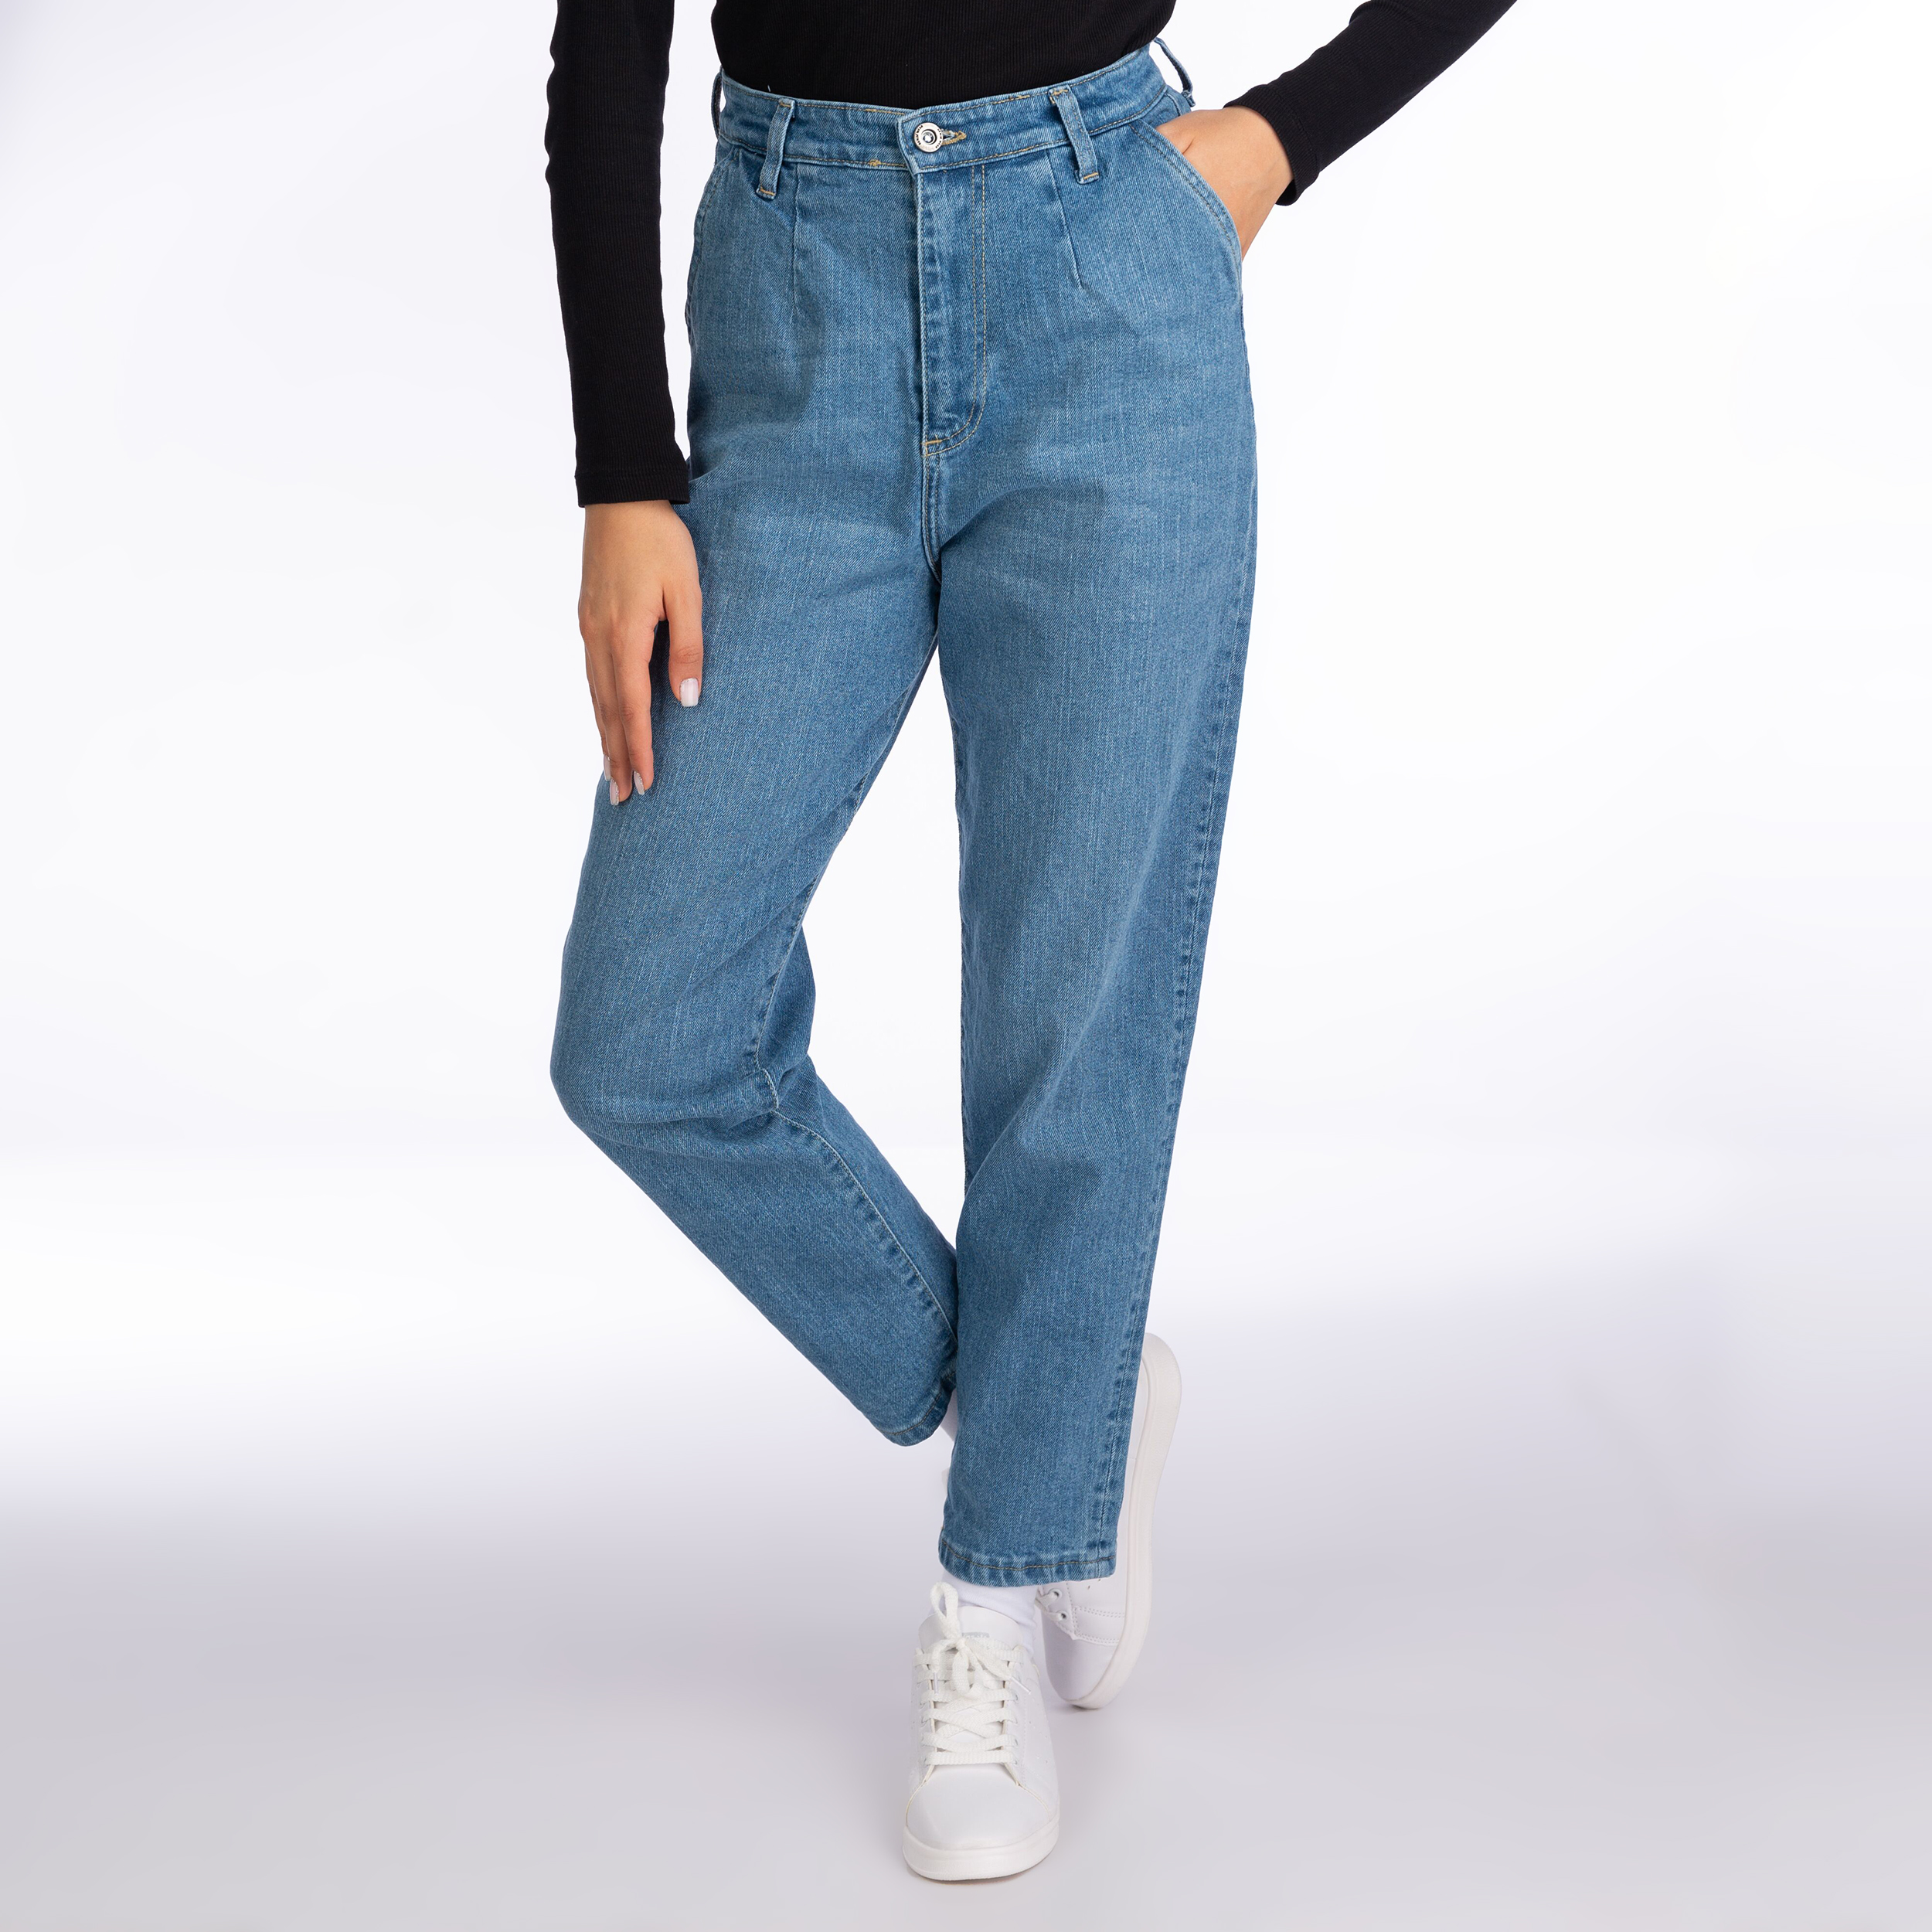 نکته خرید - قیمت روز  شلوار جین زنانه ایزی دو مدل 2347850400516708 خرید